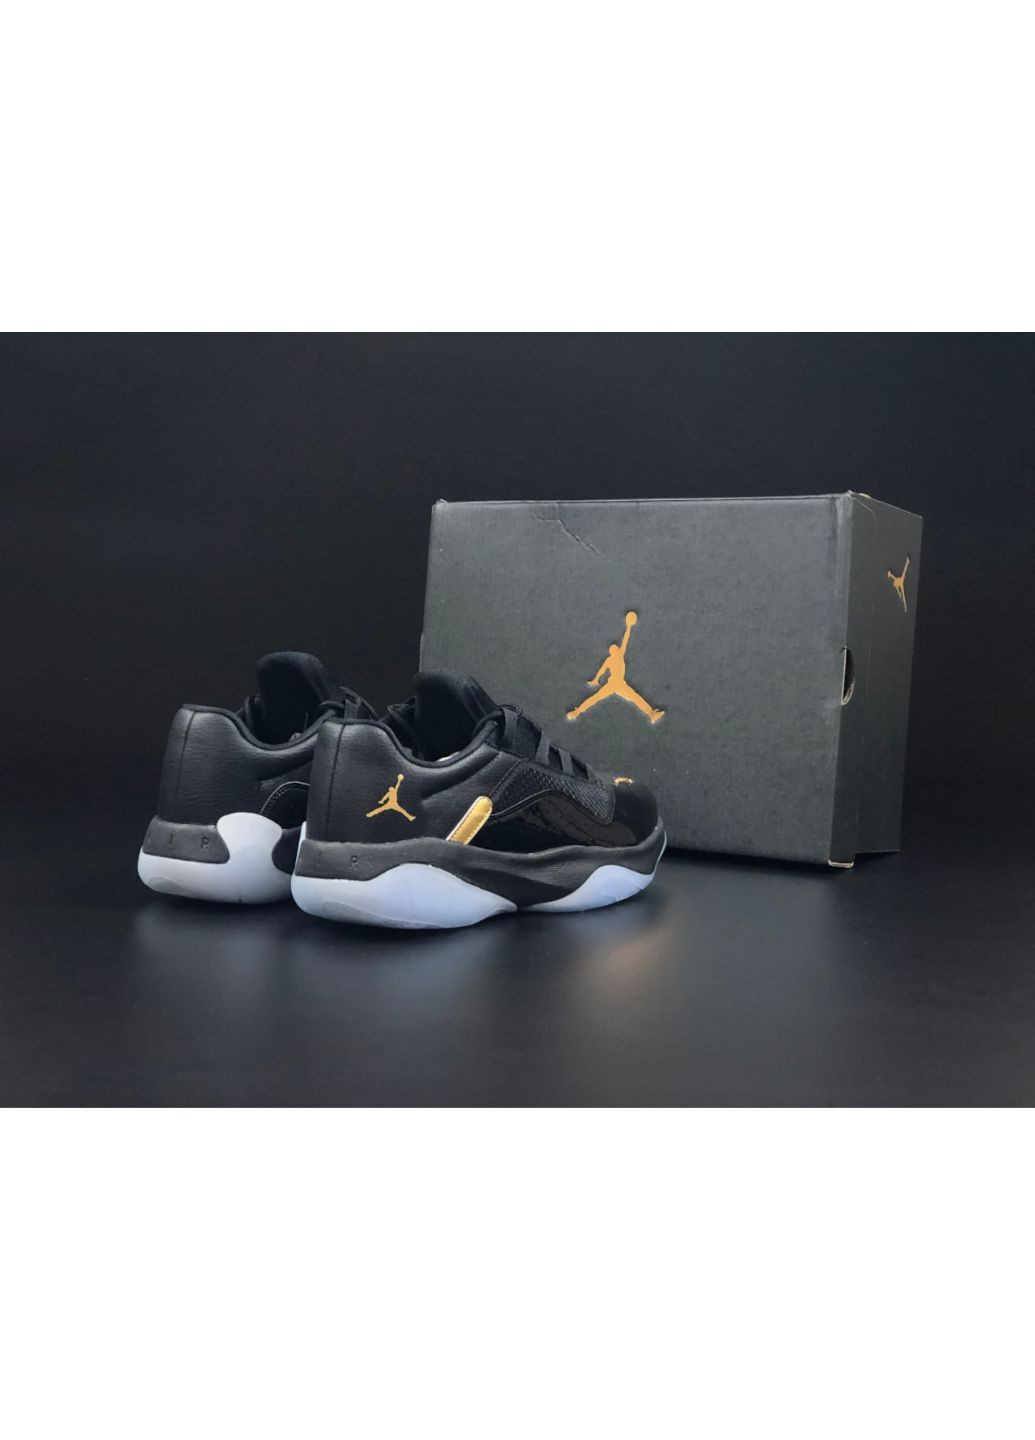 Черные демисезонные мужские кроссовки черные "no name" Nike Air Jordan 11 cmft